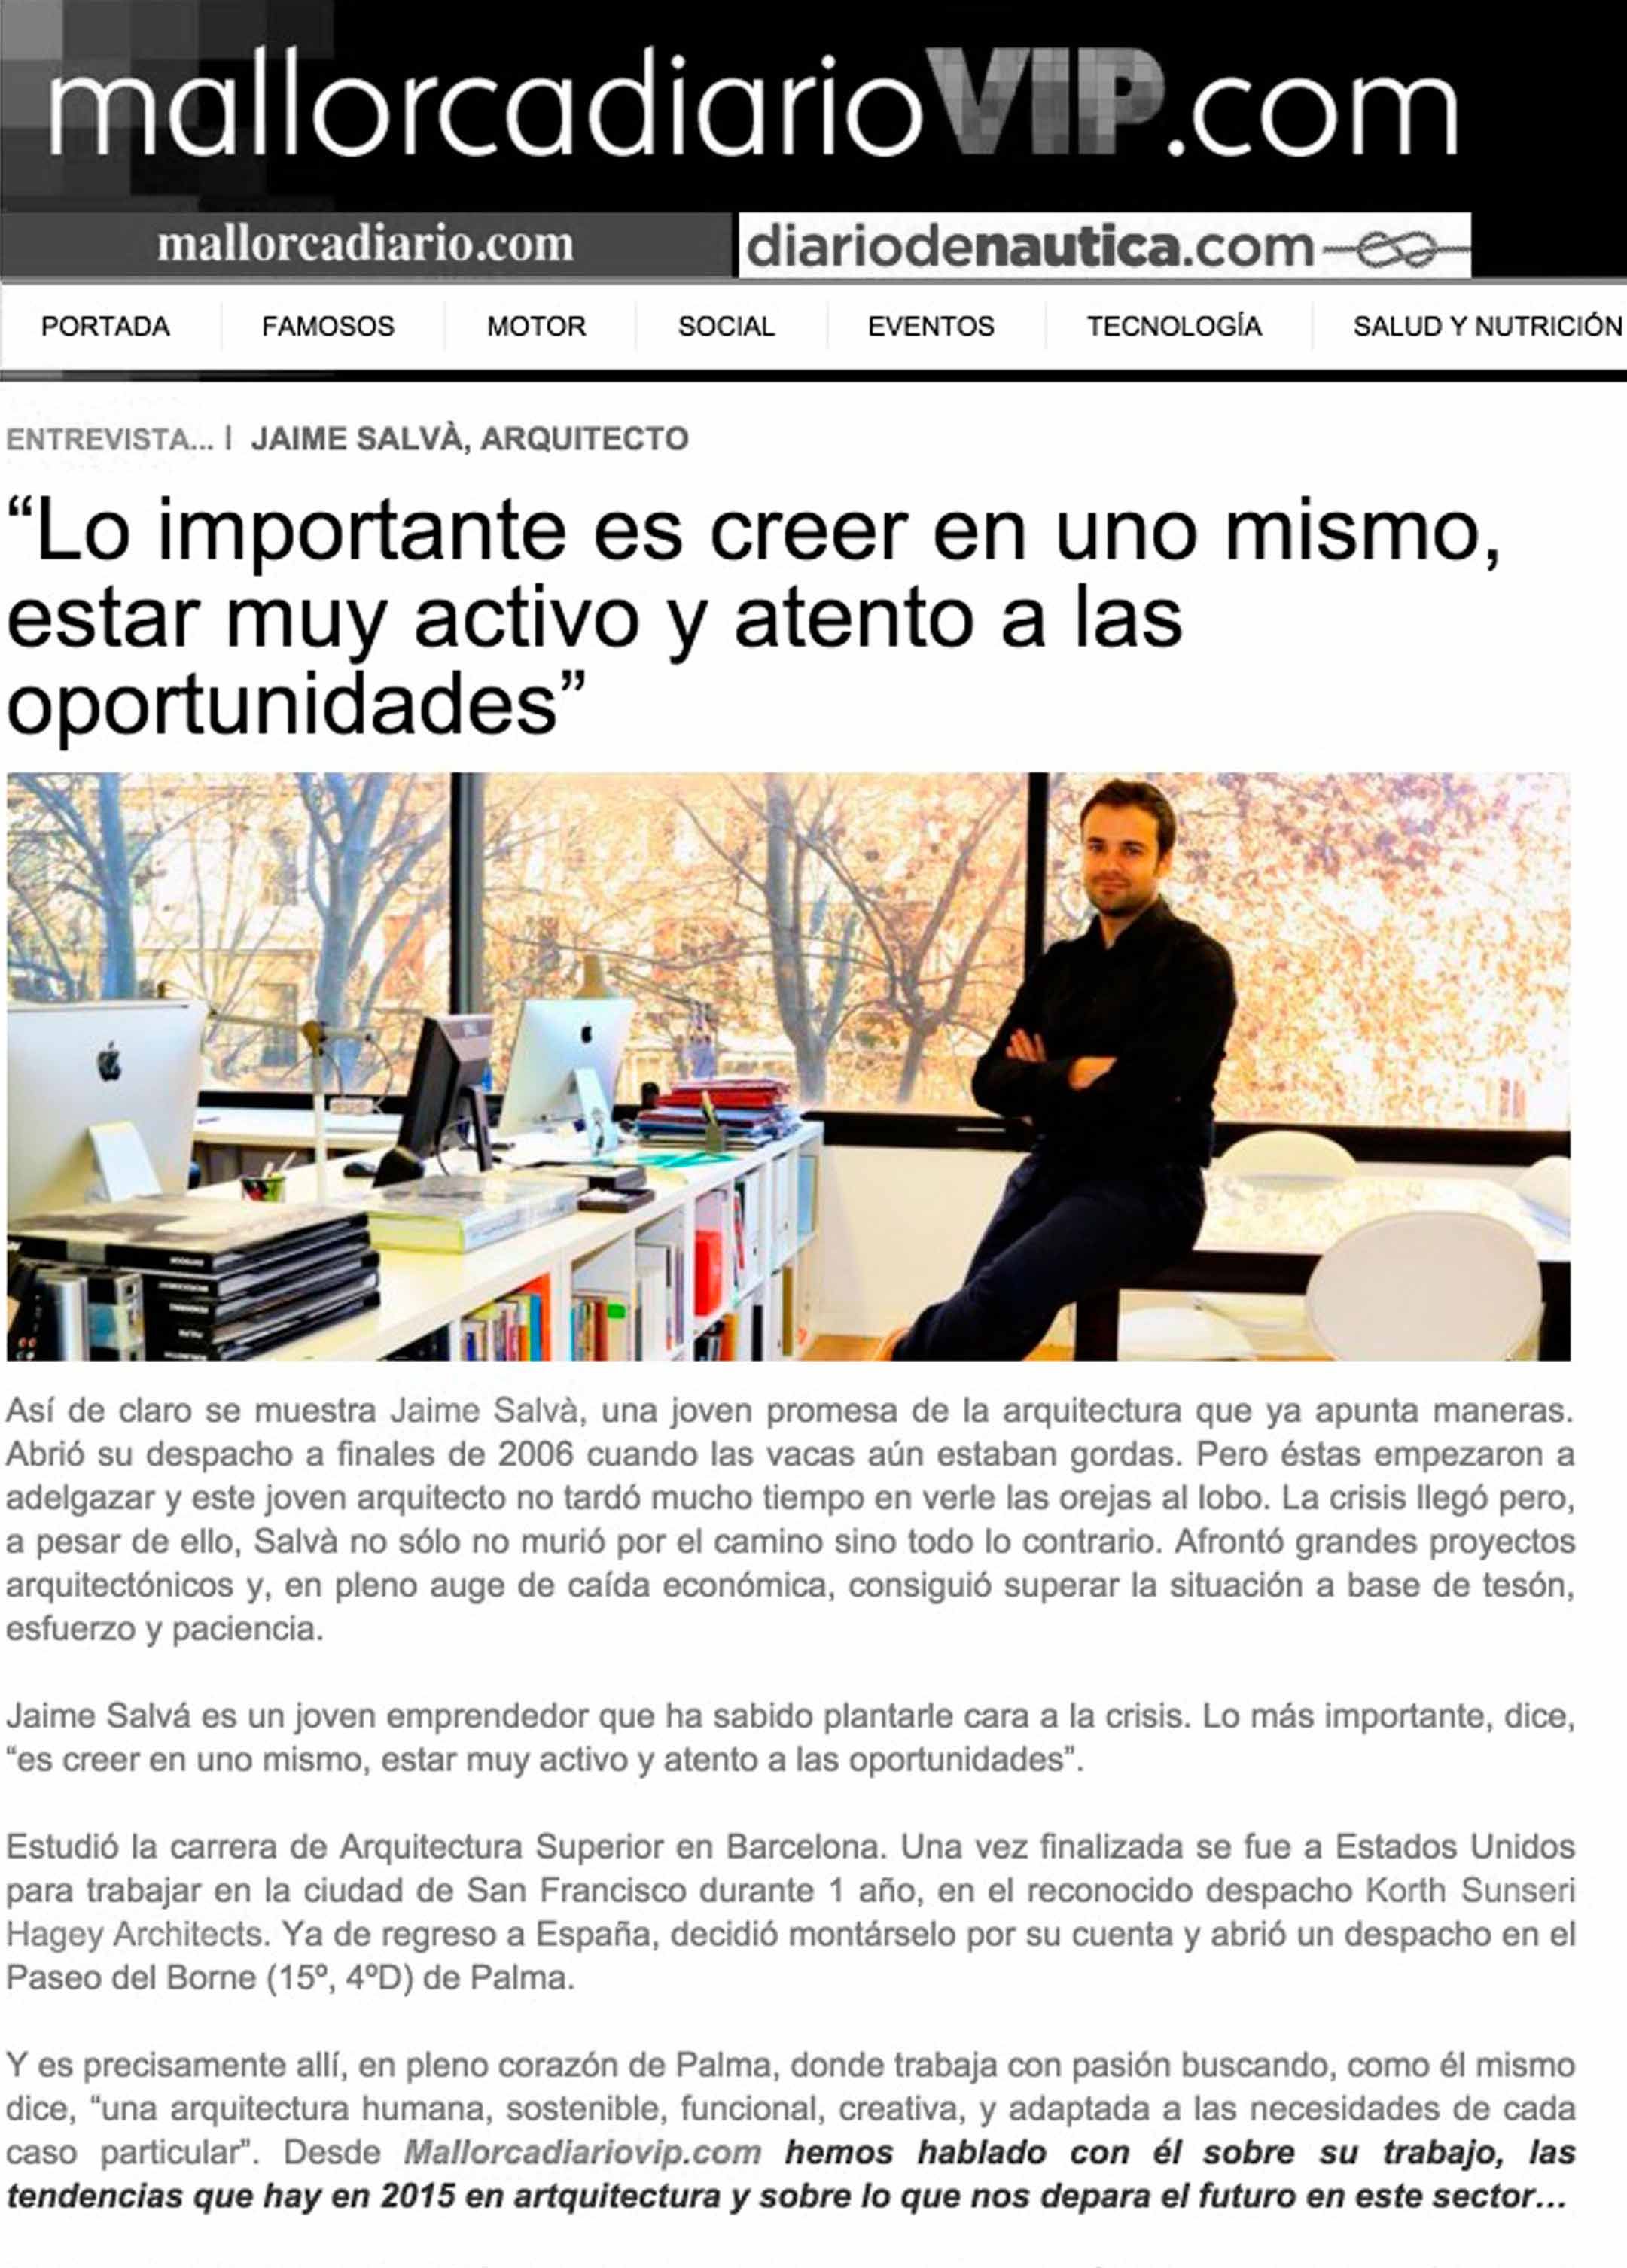 Entrevista en Mallorcadiario Vip